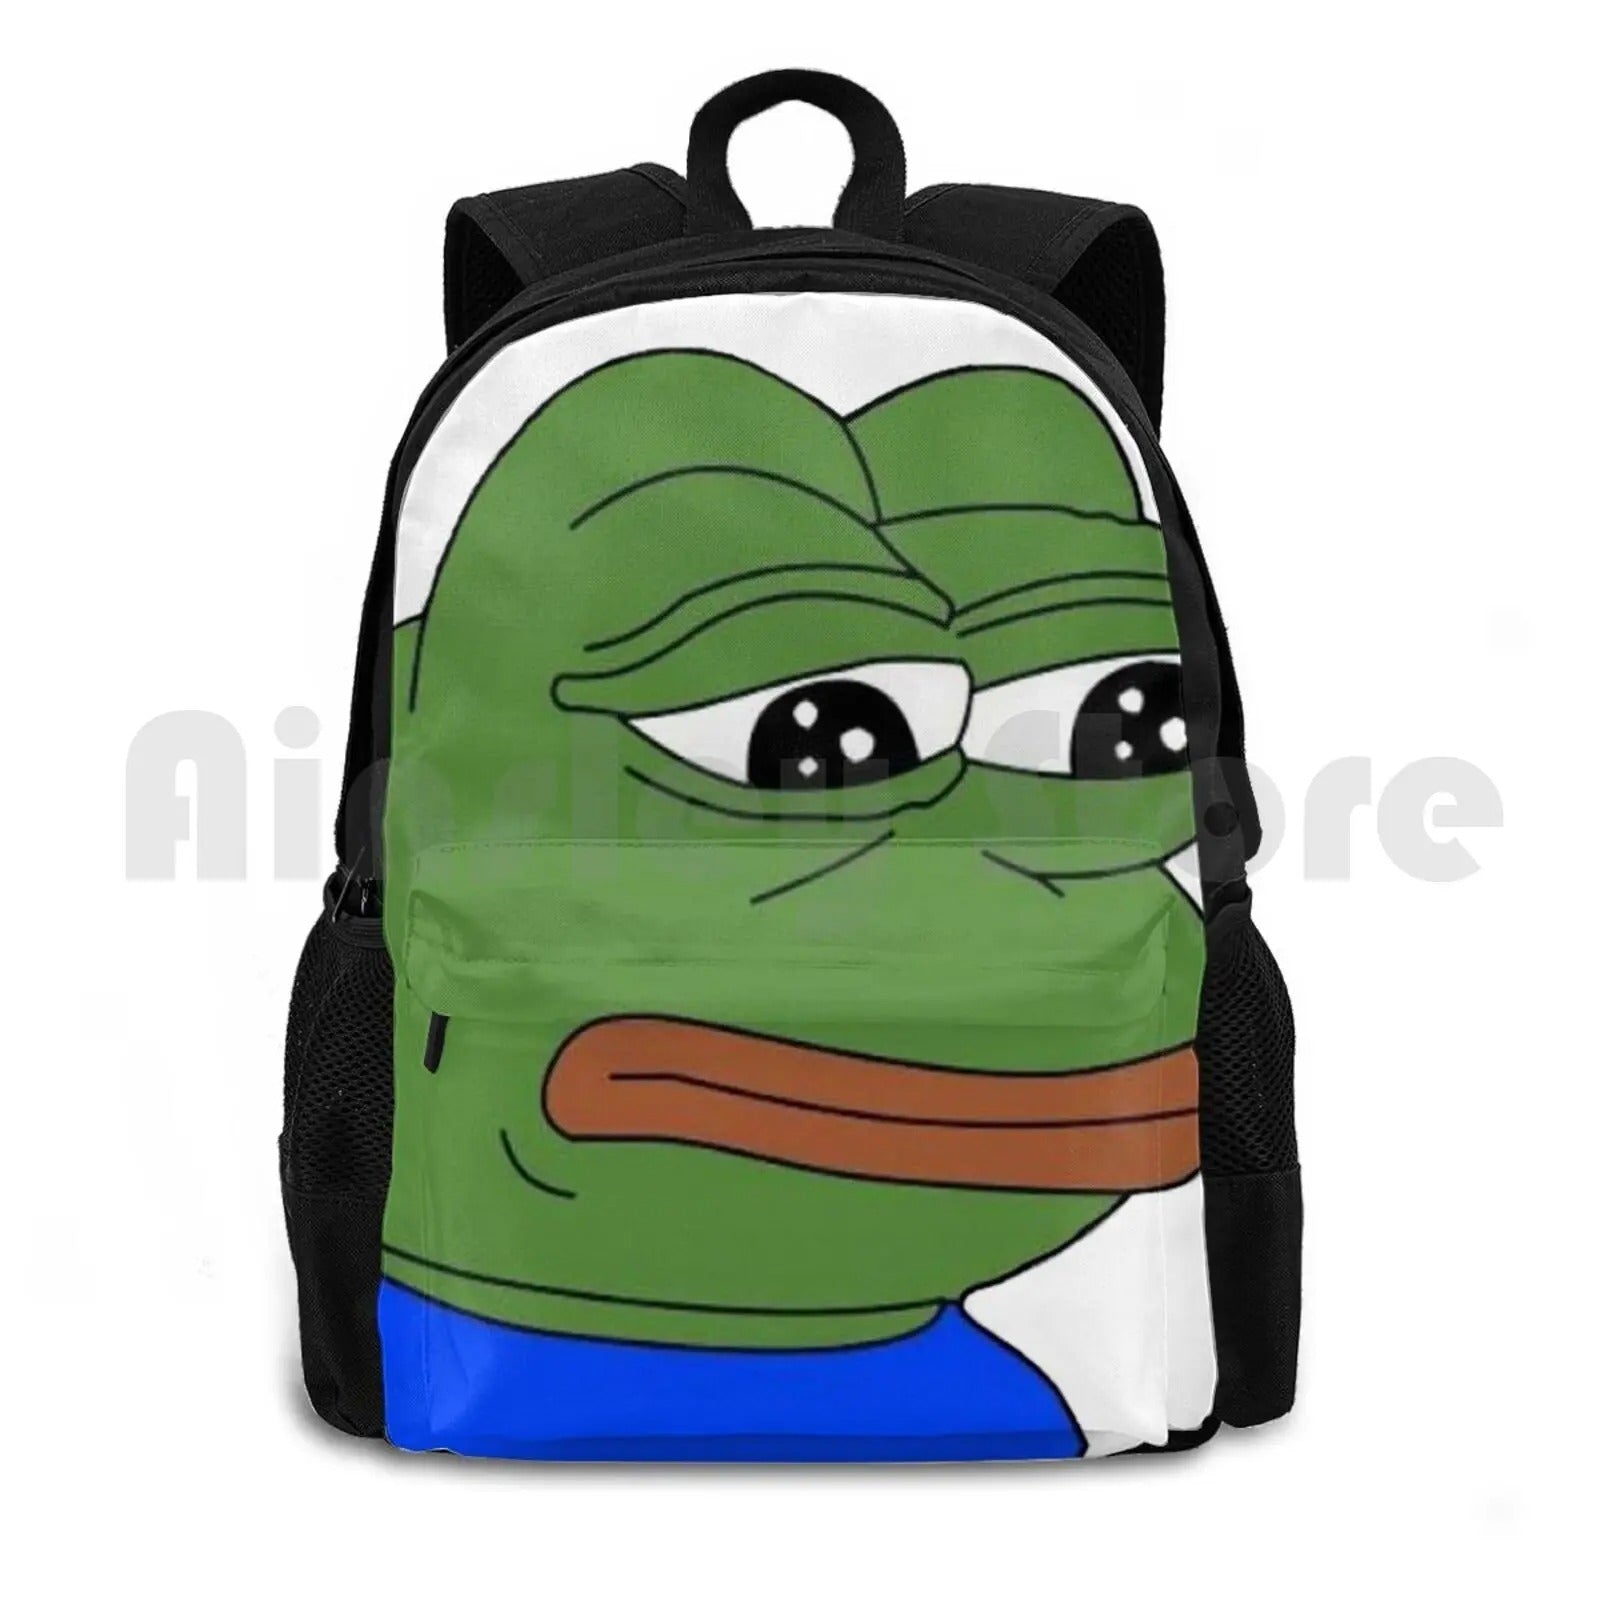 Sad Frog Backpack - Black